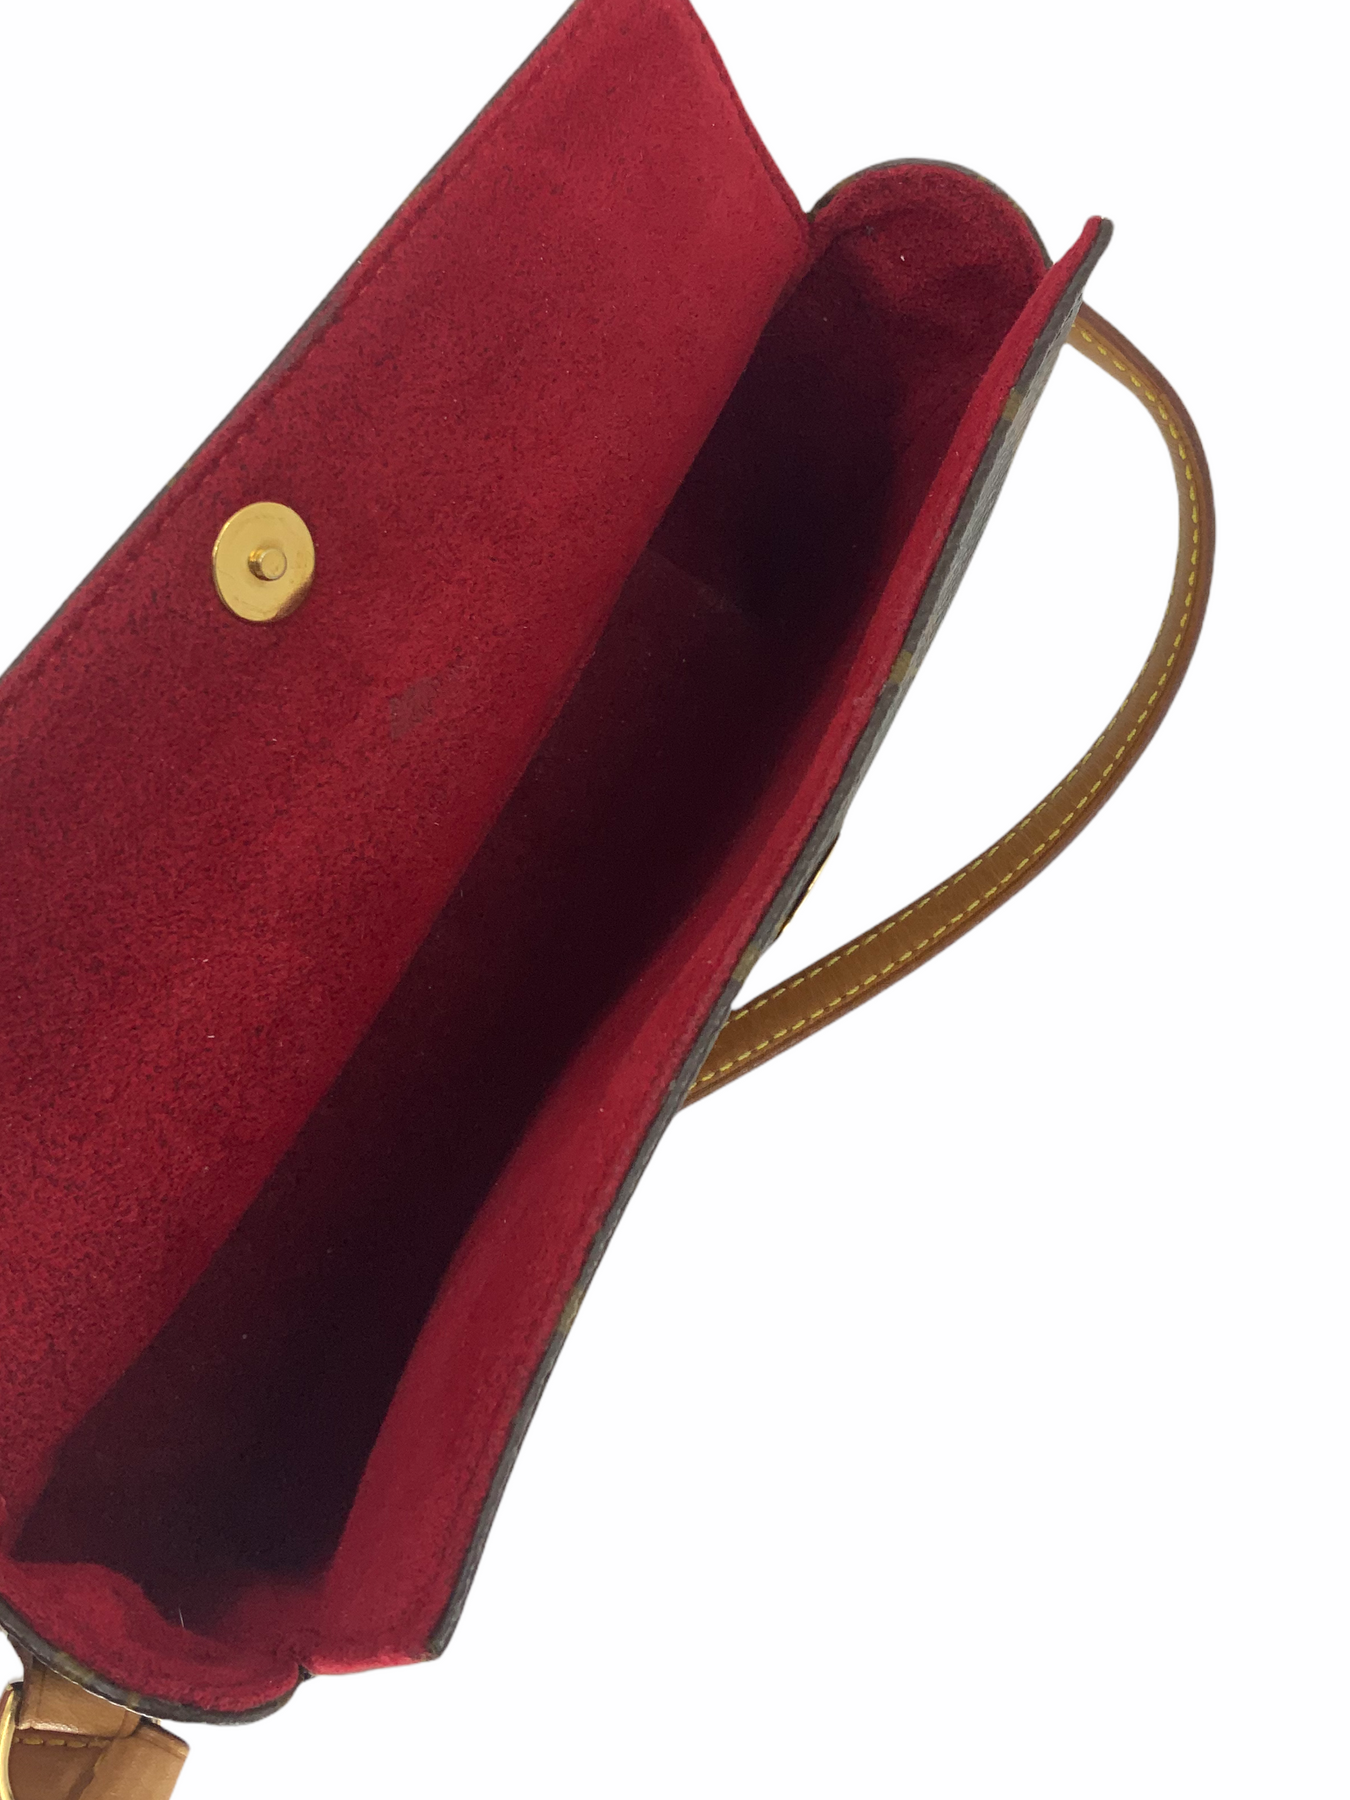 Louis Vuitton Monogram Recital Bag - Brown Shoulder Bags, Handbags -  LOU797139